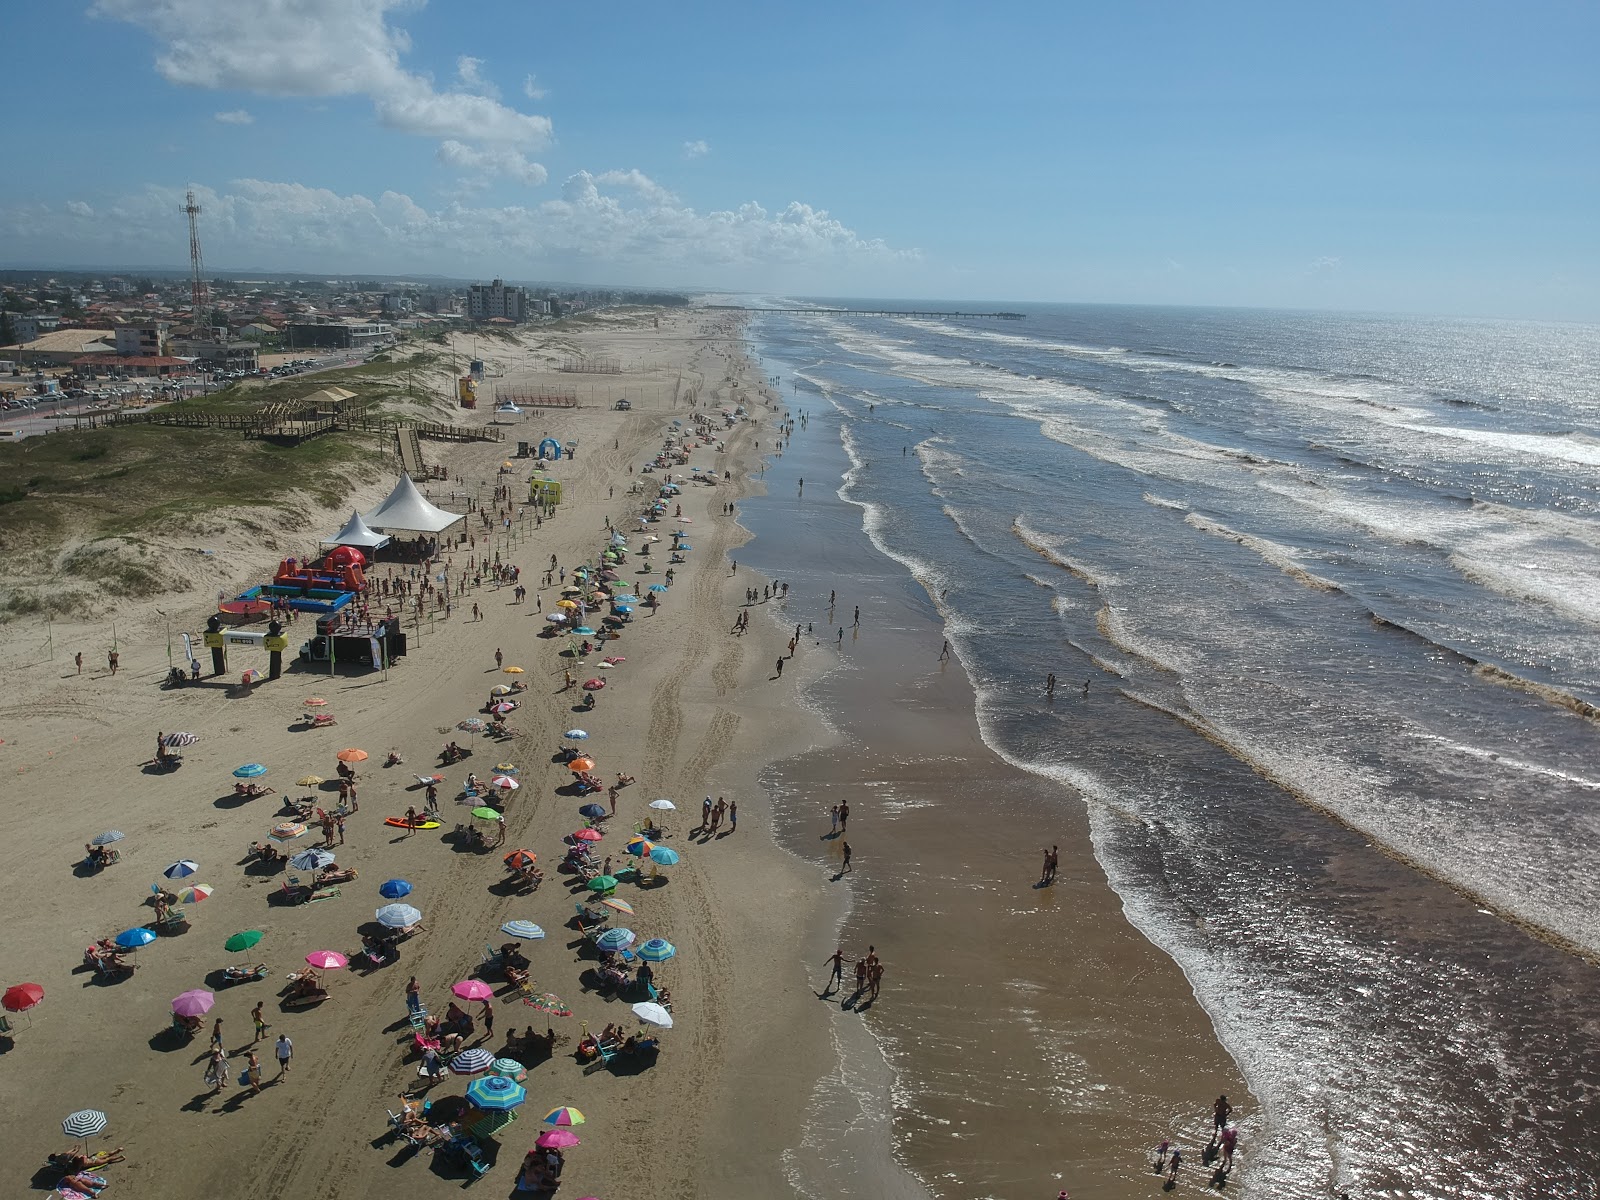 Praia do Rincao'in fotoğrafı ve yerleşim